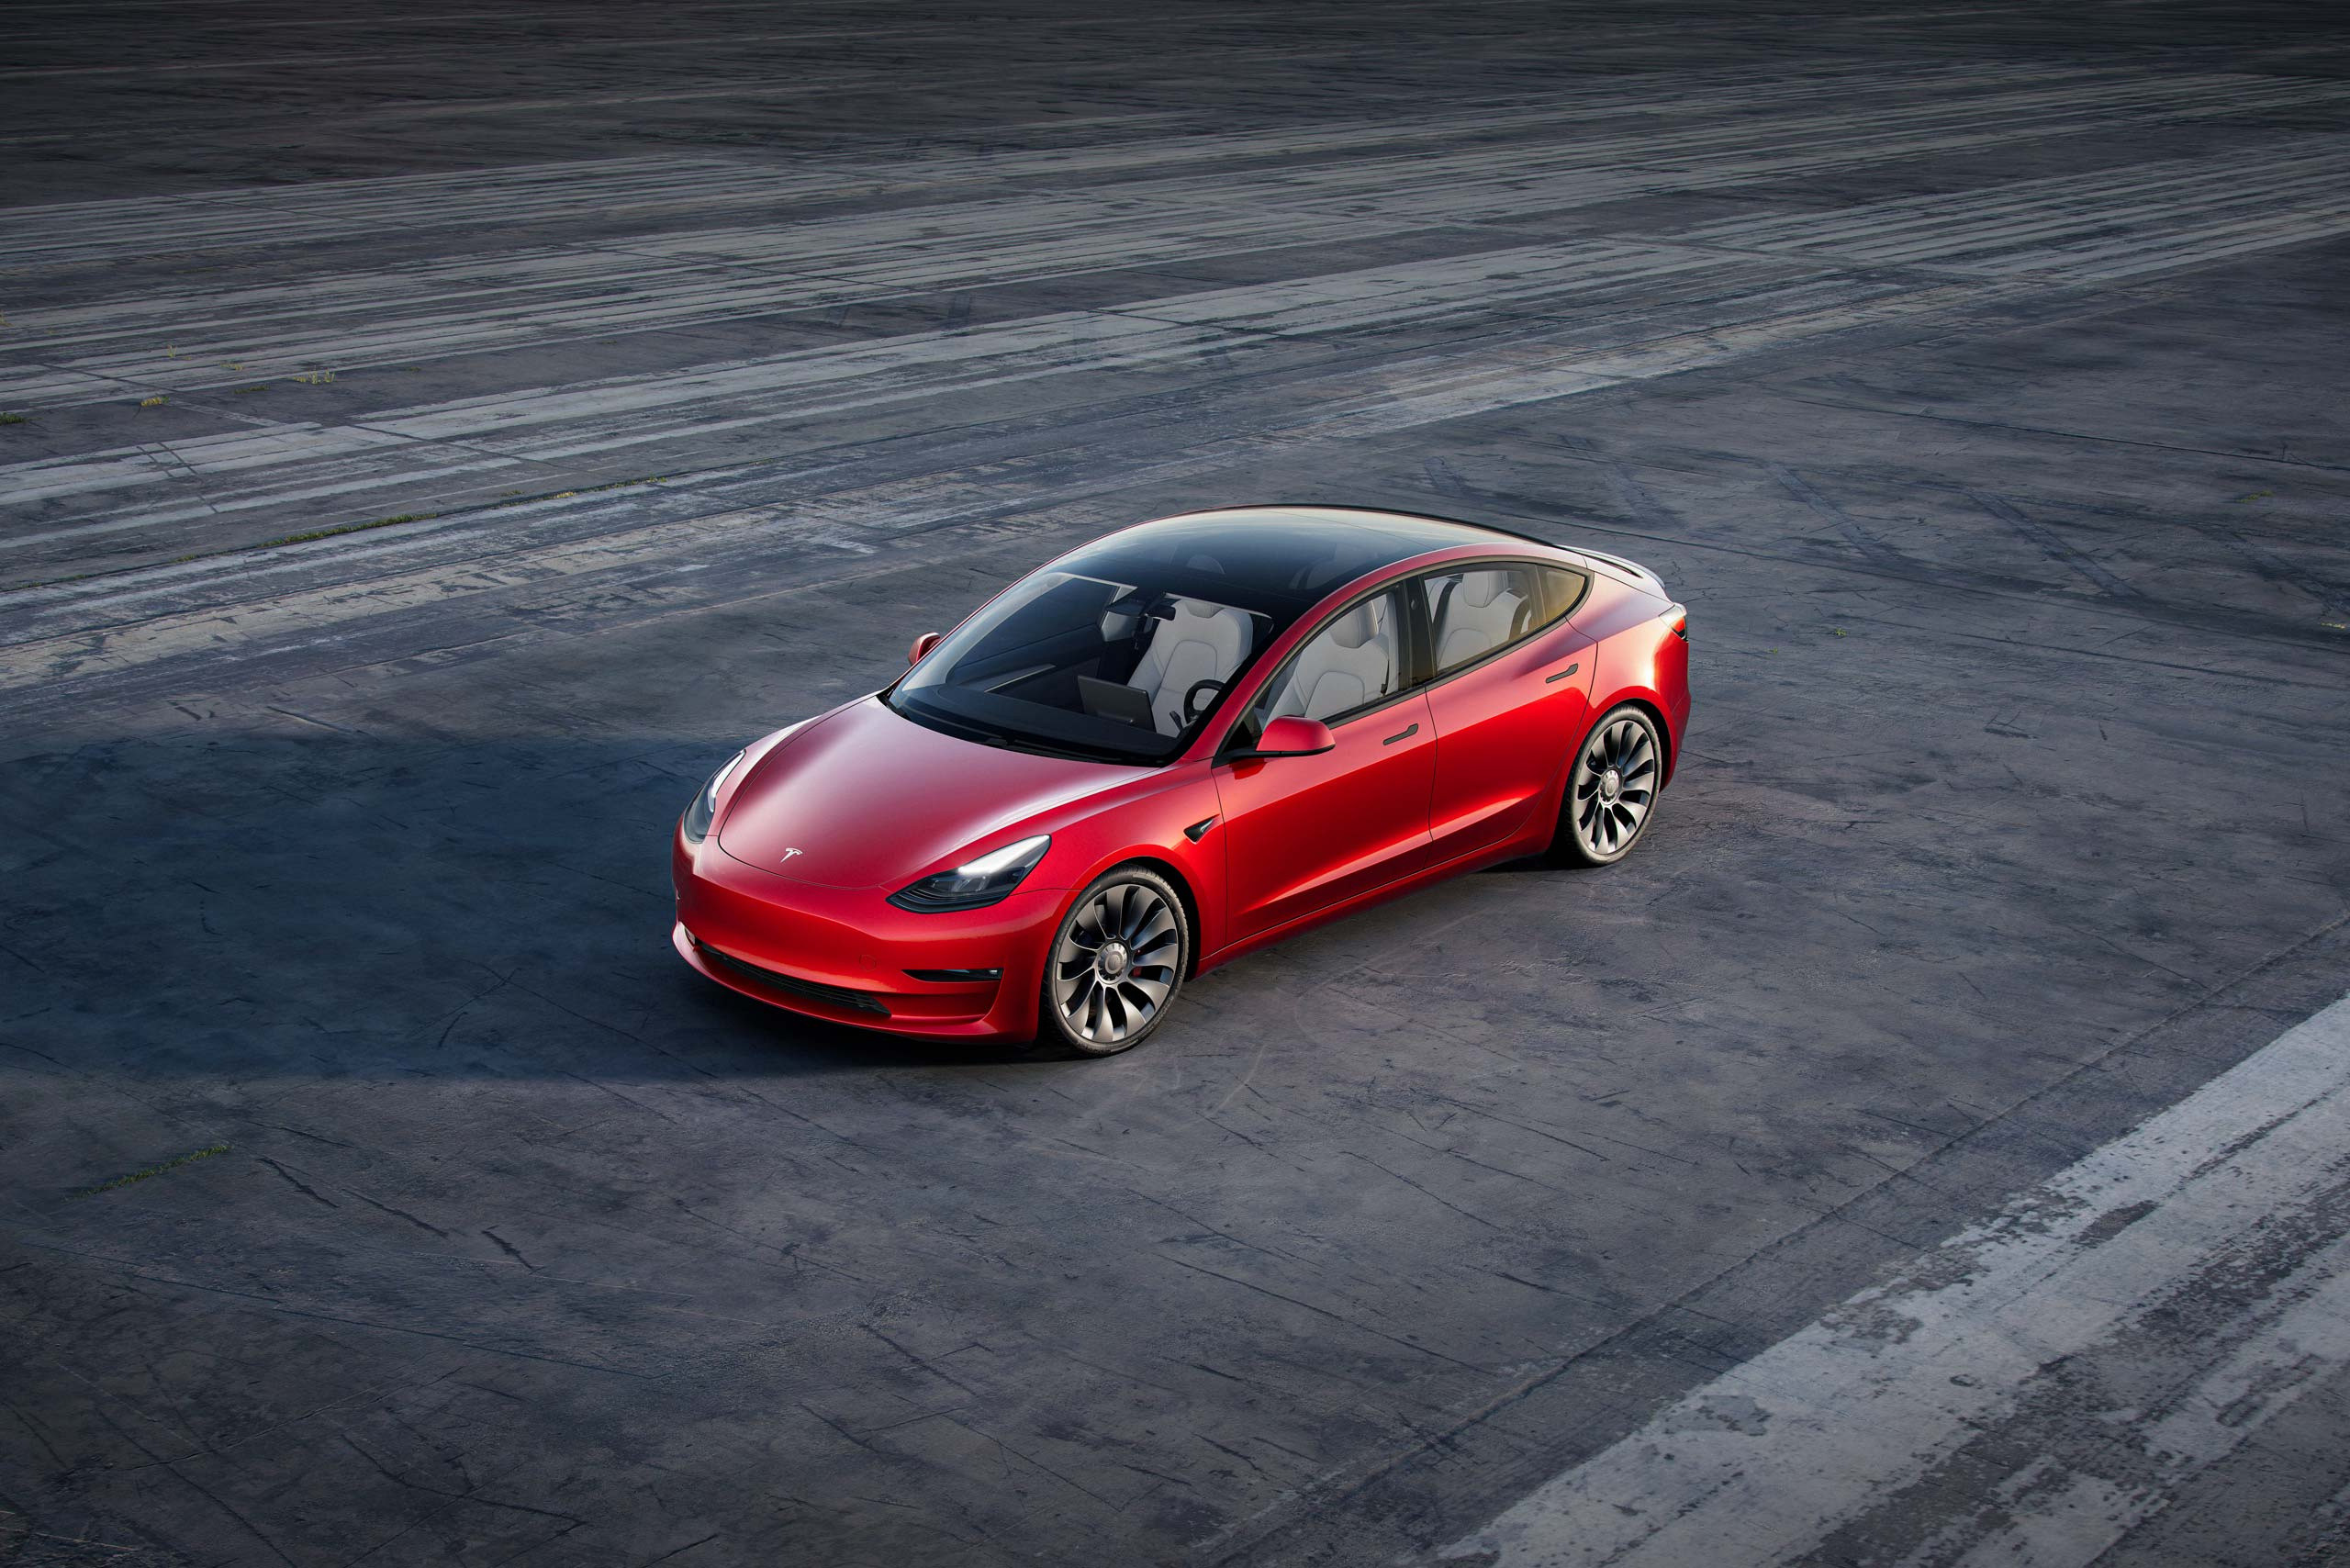 Disciplinair Previs site Hassy Tesla verlaagt prijs van elektrische sedan model 3 - Moby